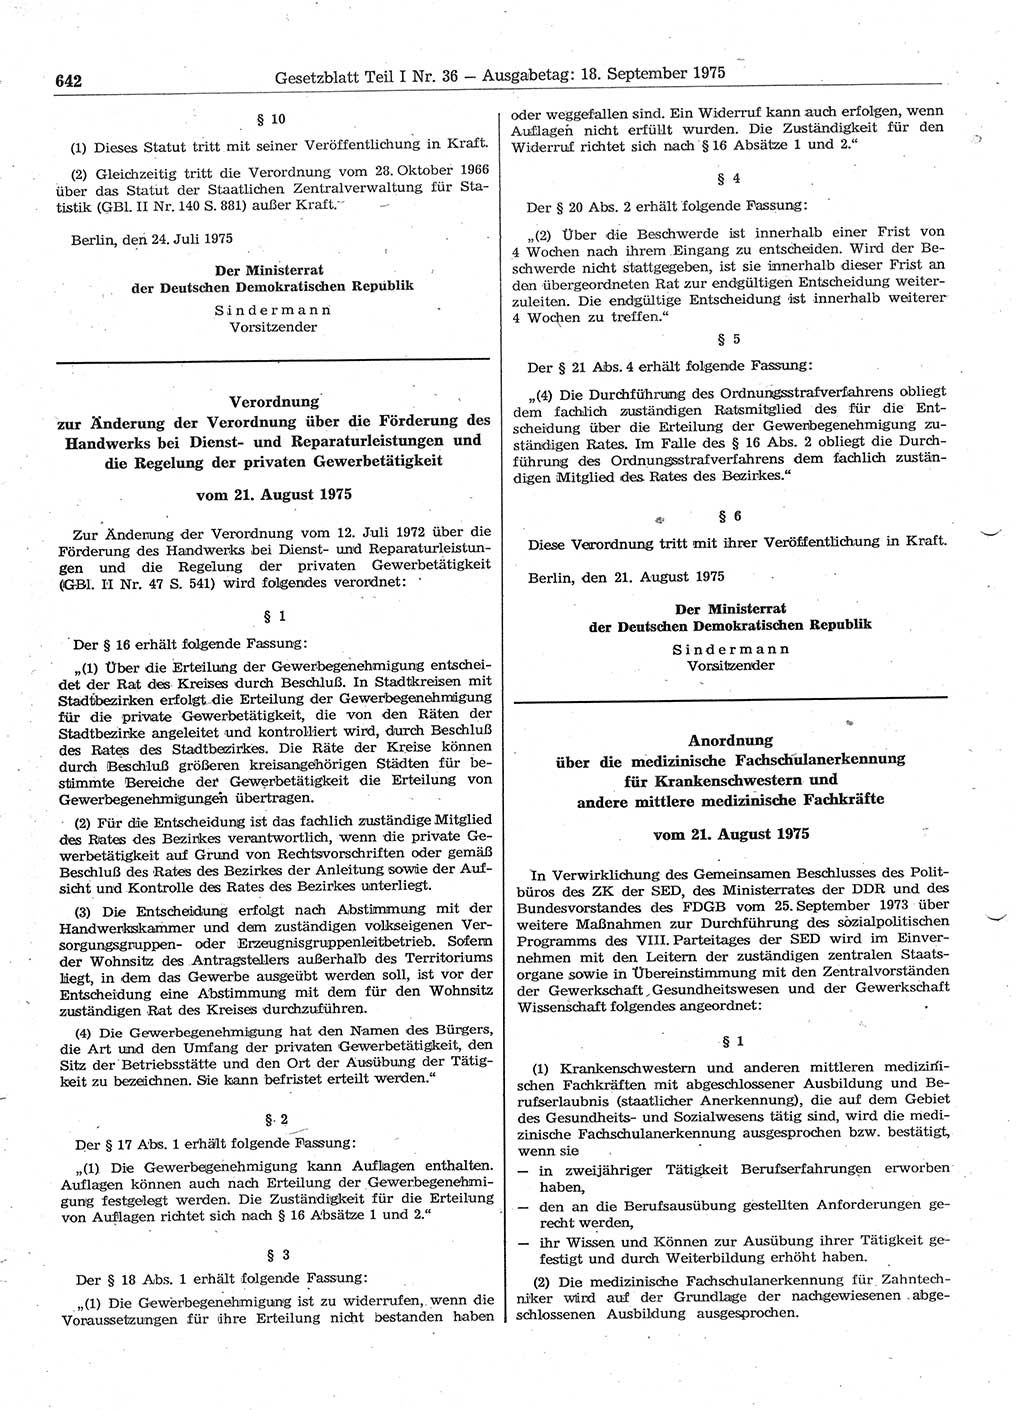 Gesetzblatt (GBl.) der Deutschen Demokratischen Republik (DDR) Teil Ⅰ 1975, Seite 642 (GBl. DDR Ⅰ 1975, S. 642)